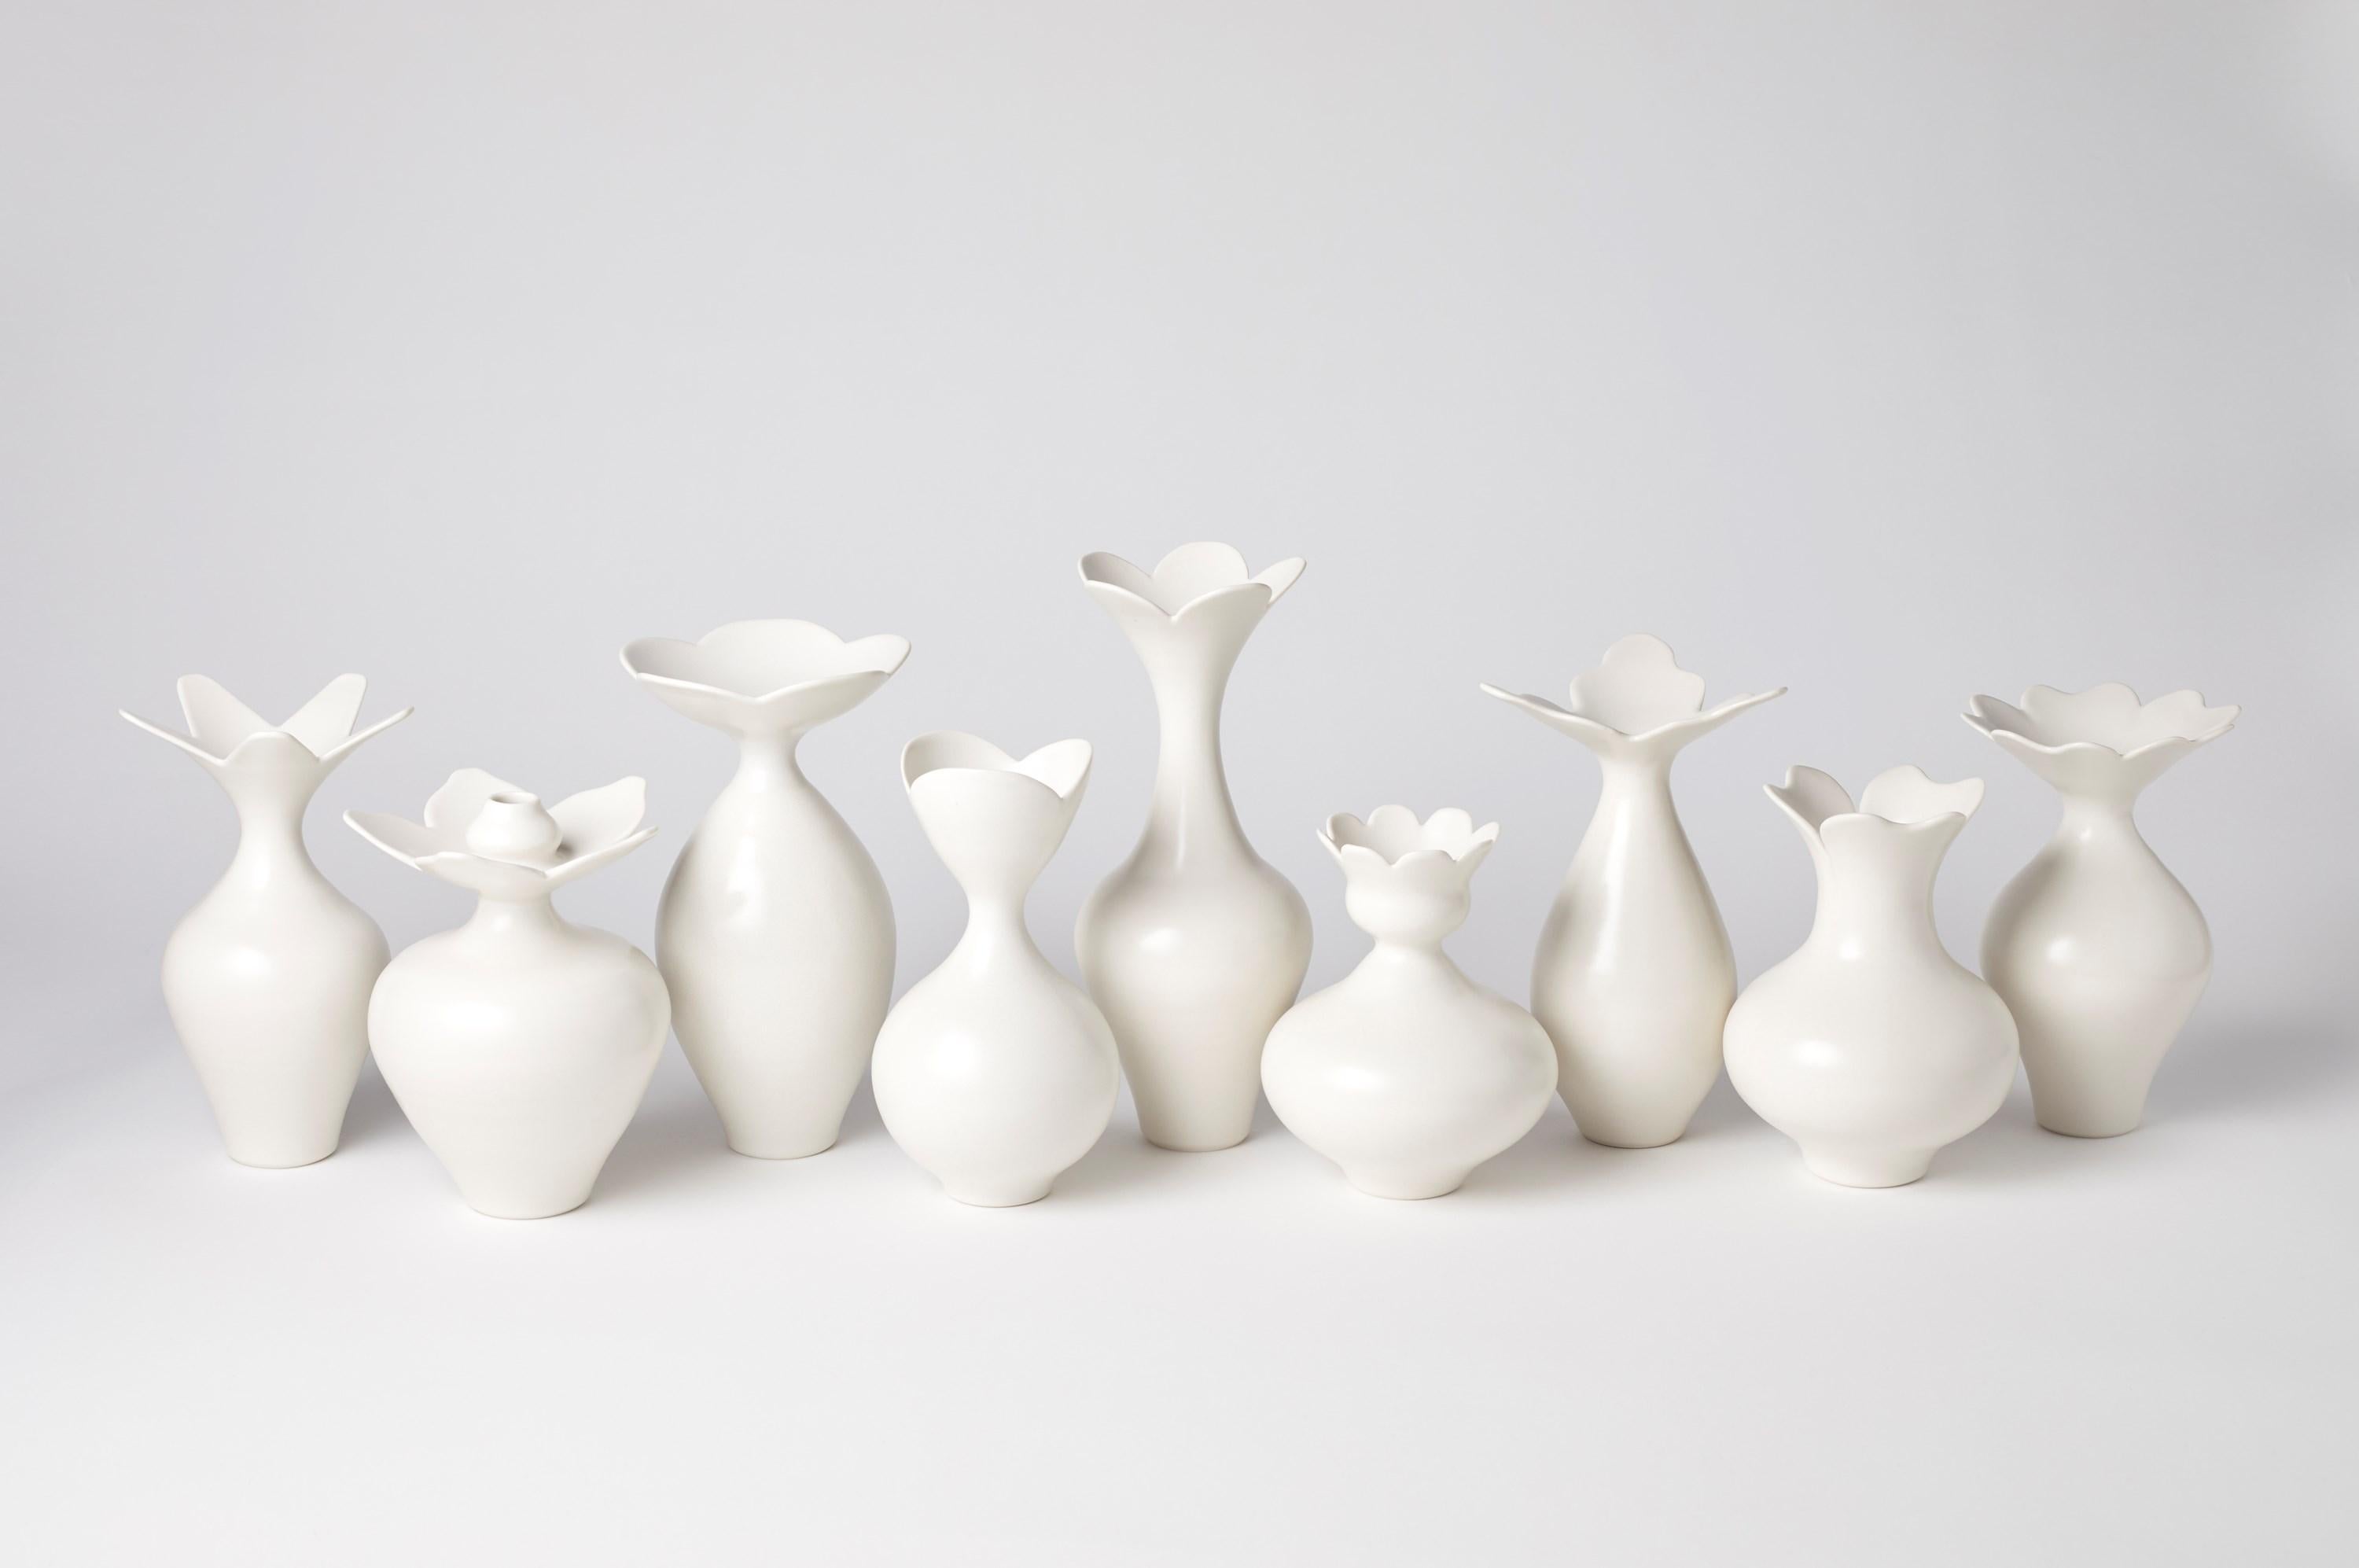 British Vase with Foliate Rim I, a Unique White Porcelain Vase by Vivienne Foley